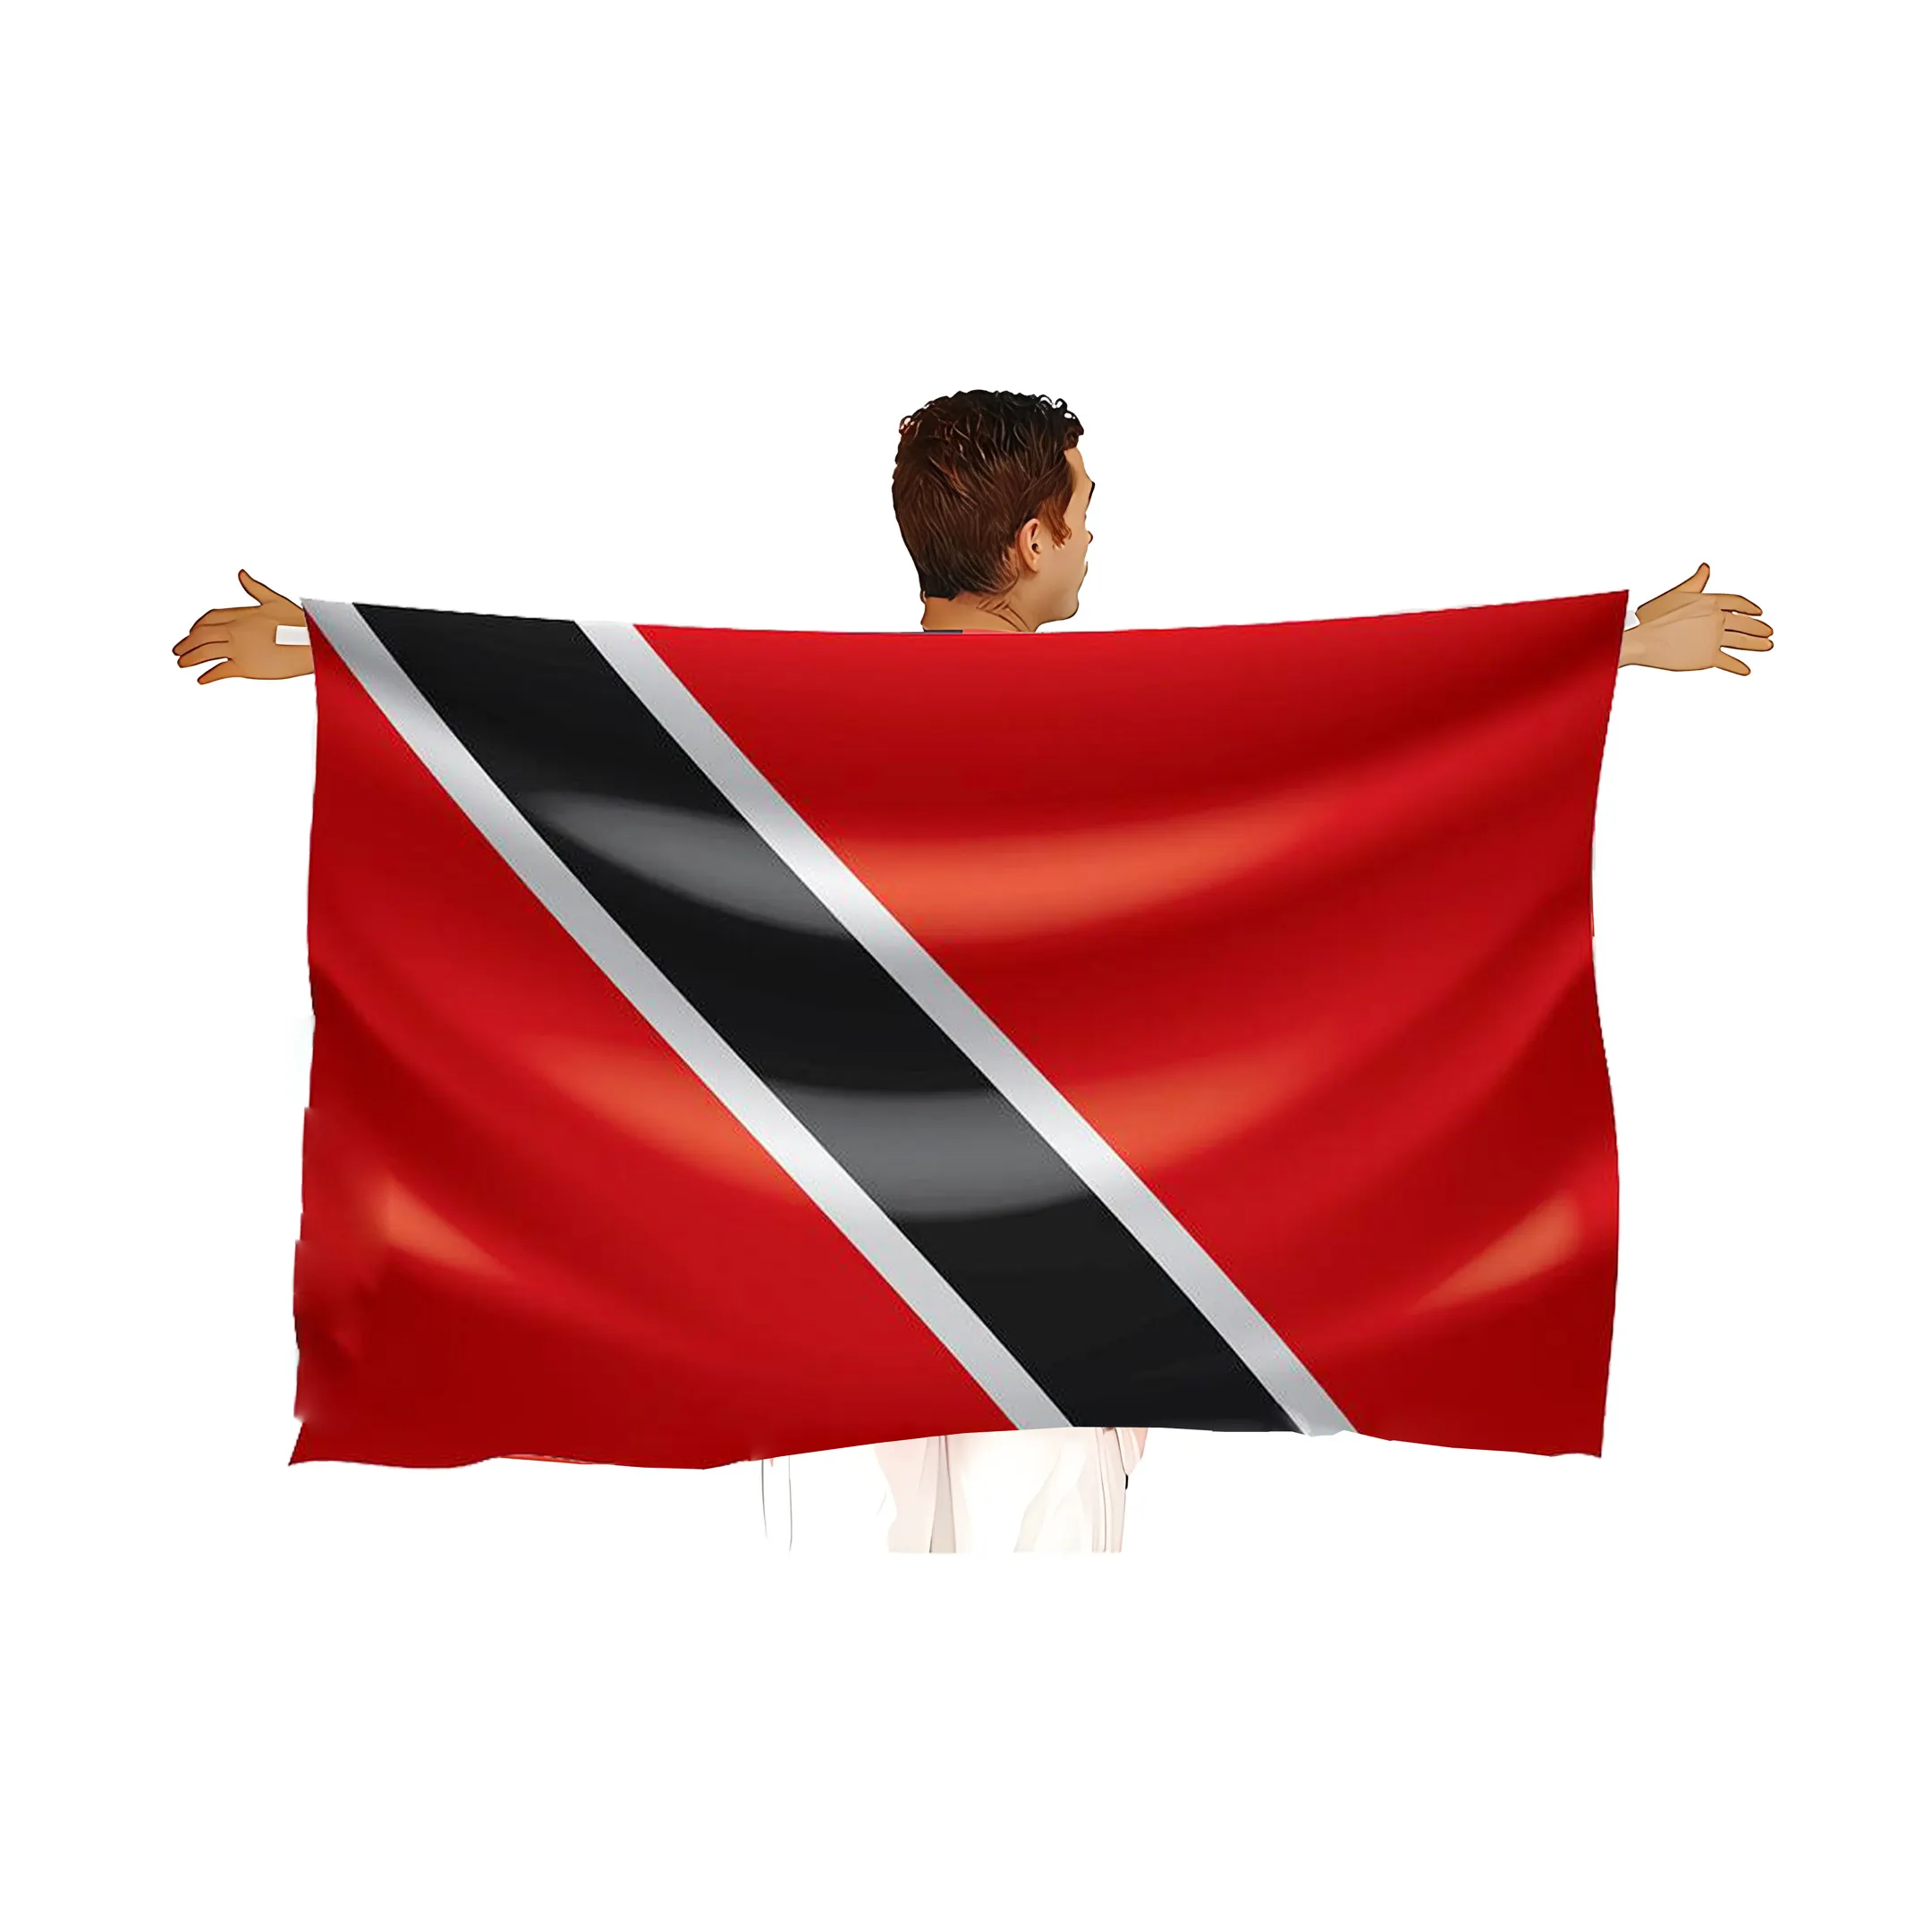 90x150cm 3 'x 5'Trinidad pelerin bayrağı Trinidad vücut bayrağı silah kollu müzik festivali karnaval pelerin bayrakları